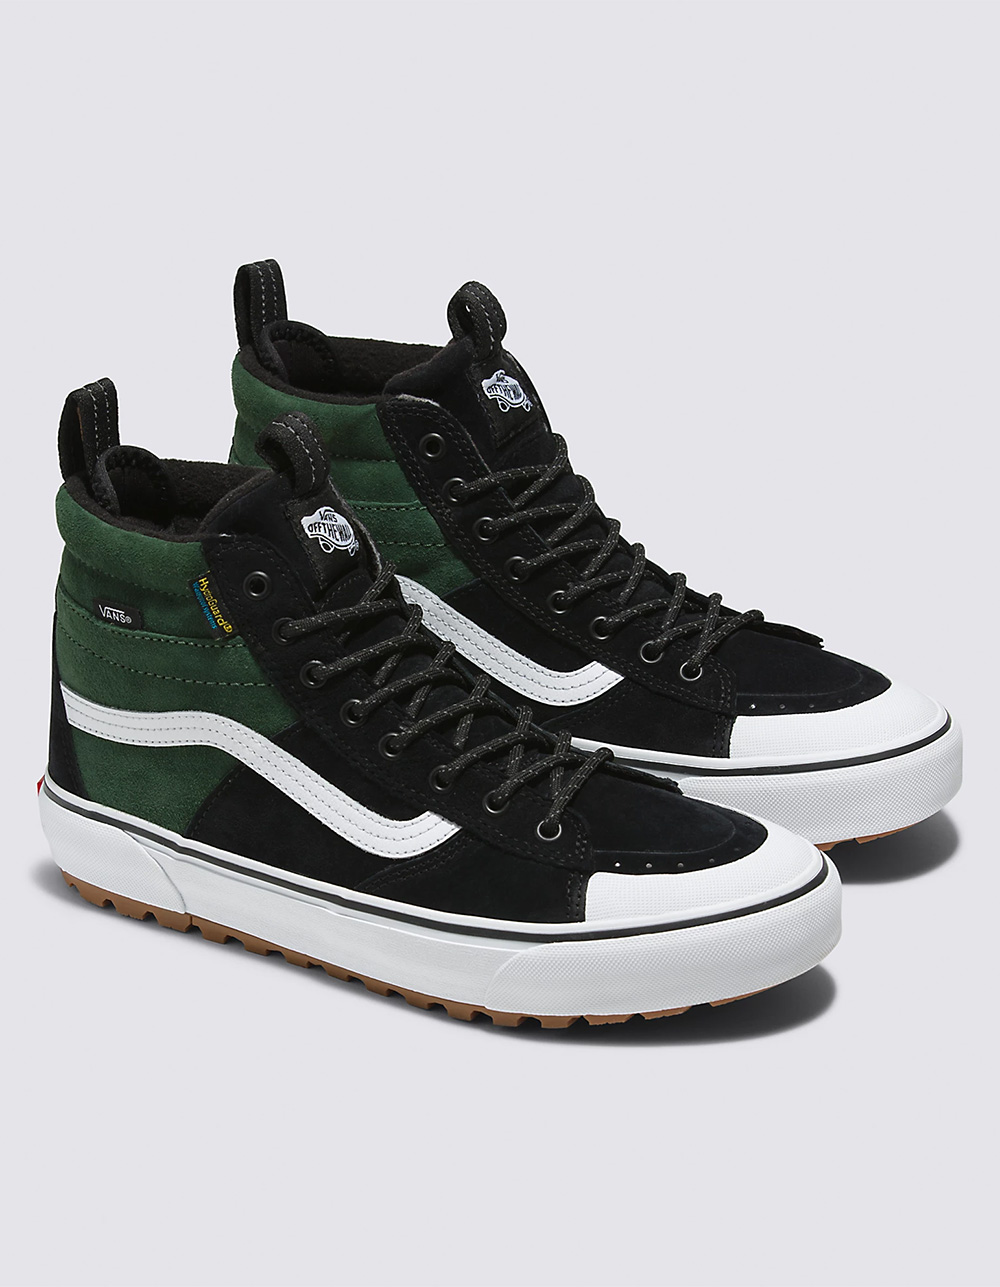 VANS Sk8-Hi MTE-2 Shoes - Black Green | Tillys